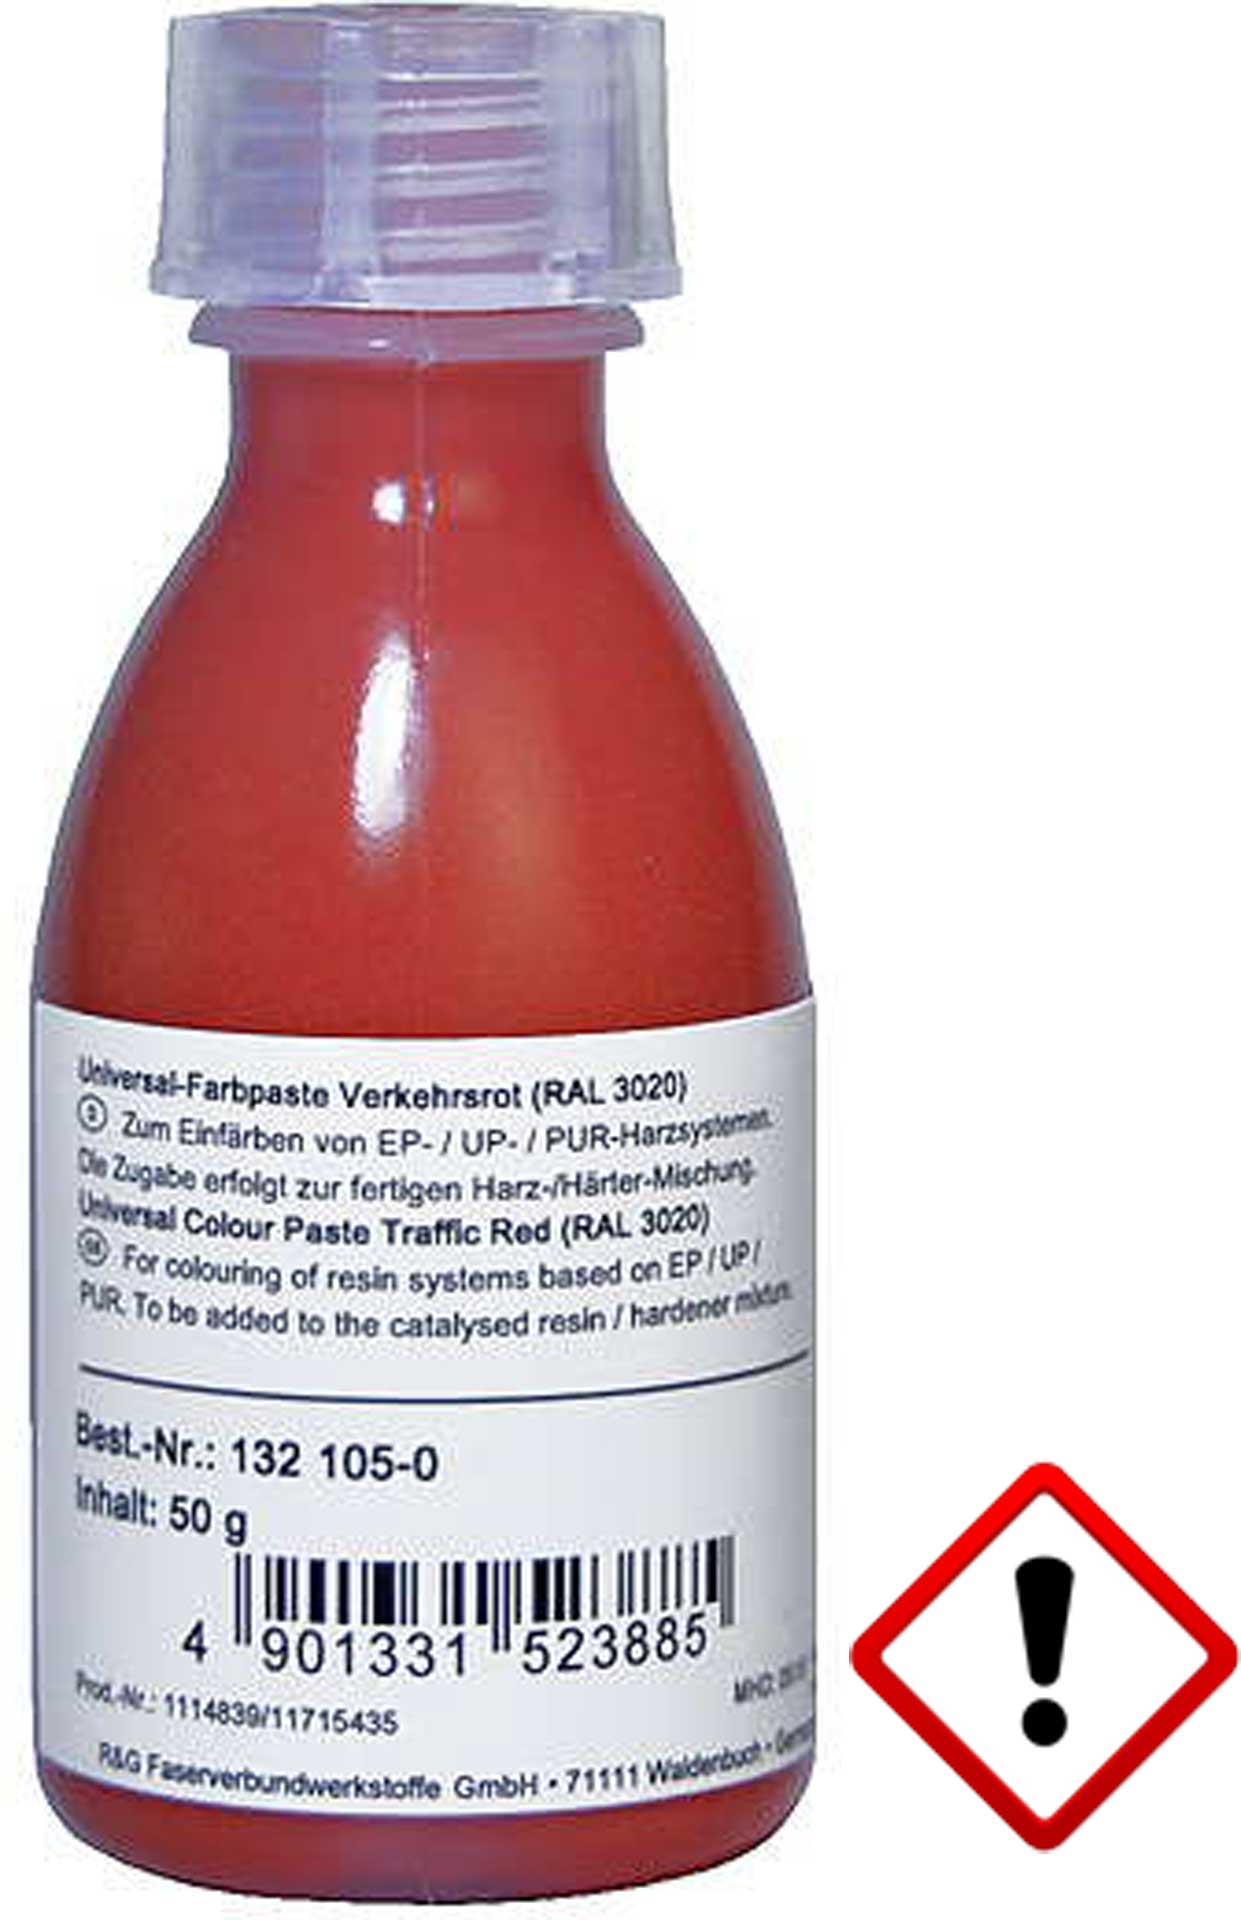 R&G Pâte de couleur universelle rouge trafic (RAL 3020) en bouteille / 50 g